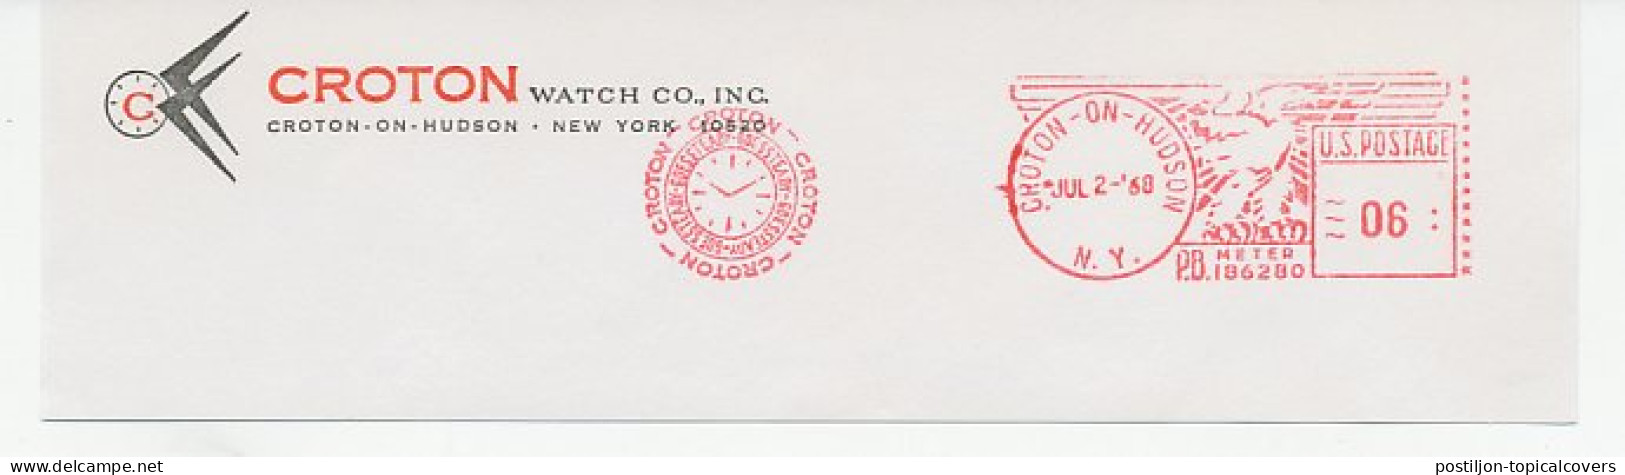 Meter Top Cut USA 1968 Watch - Croton - Relojería